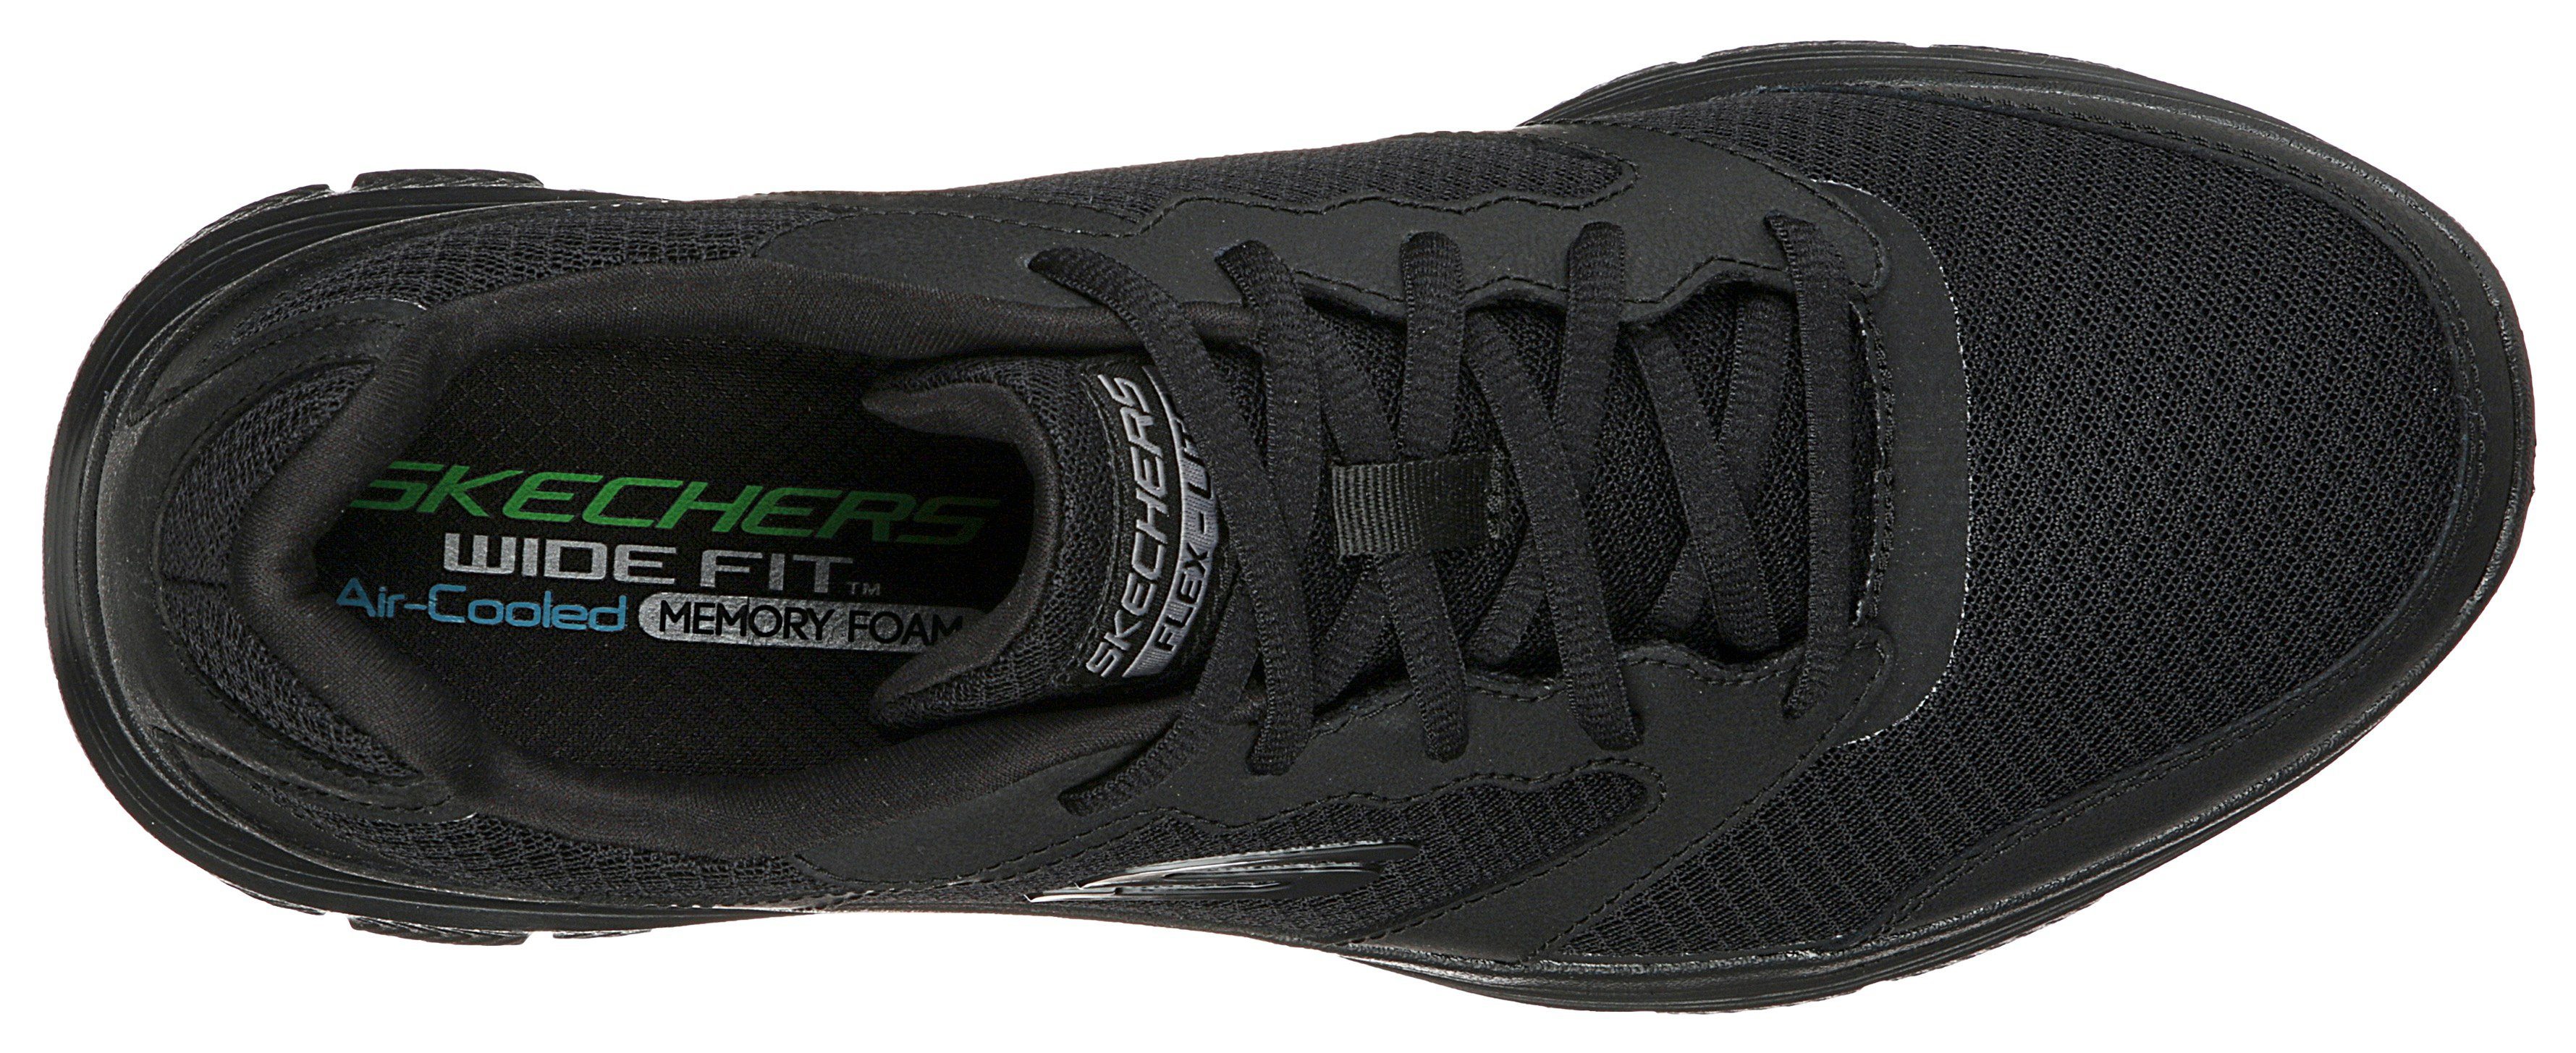 Skechers FLEX ADVANTAGE 4.0 schwarz Profil mit leichtem Sneaker